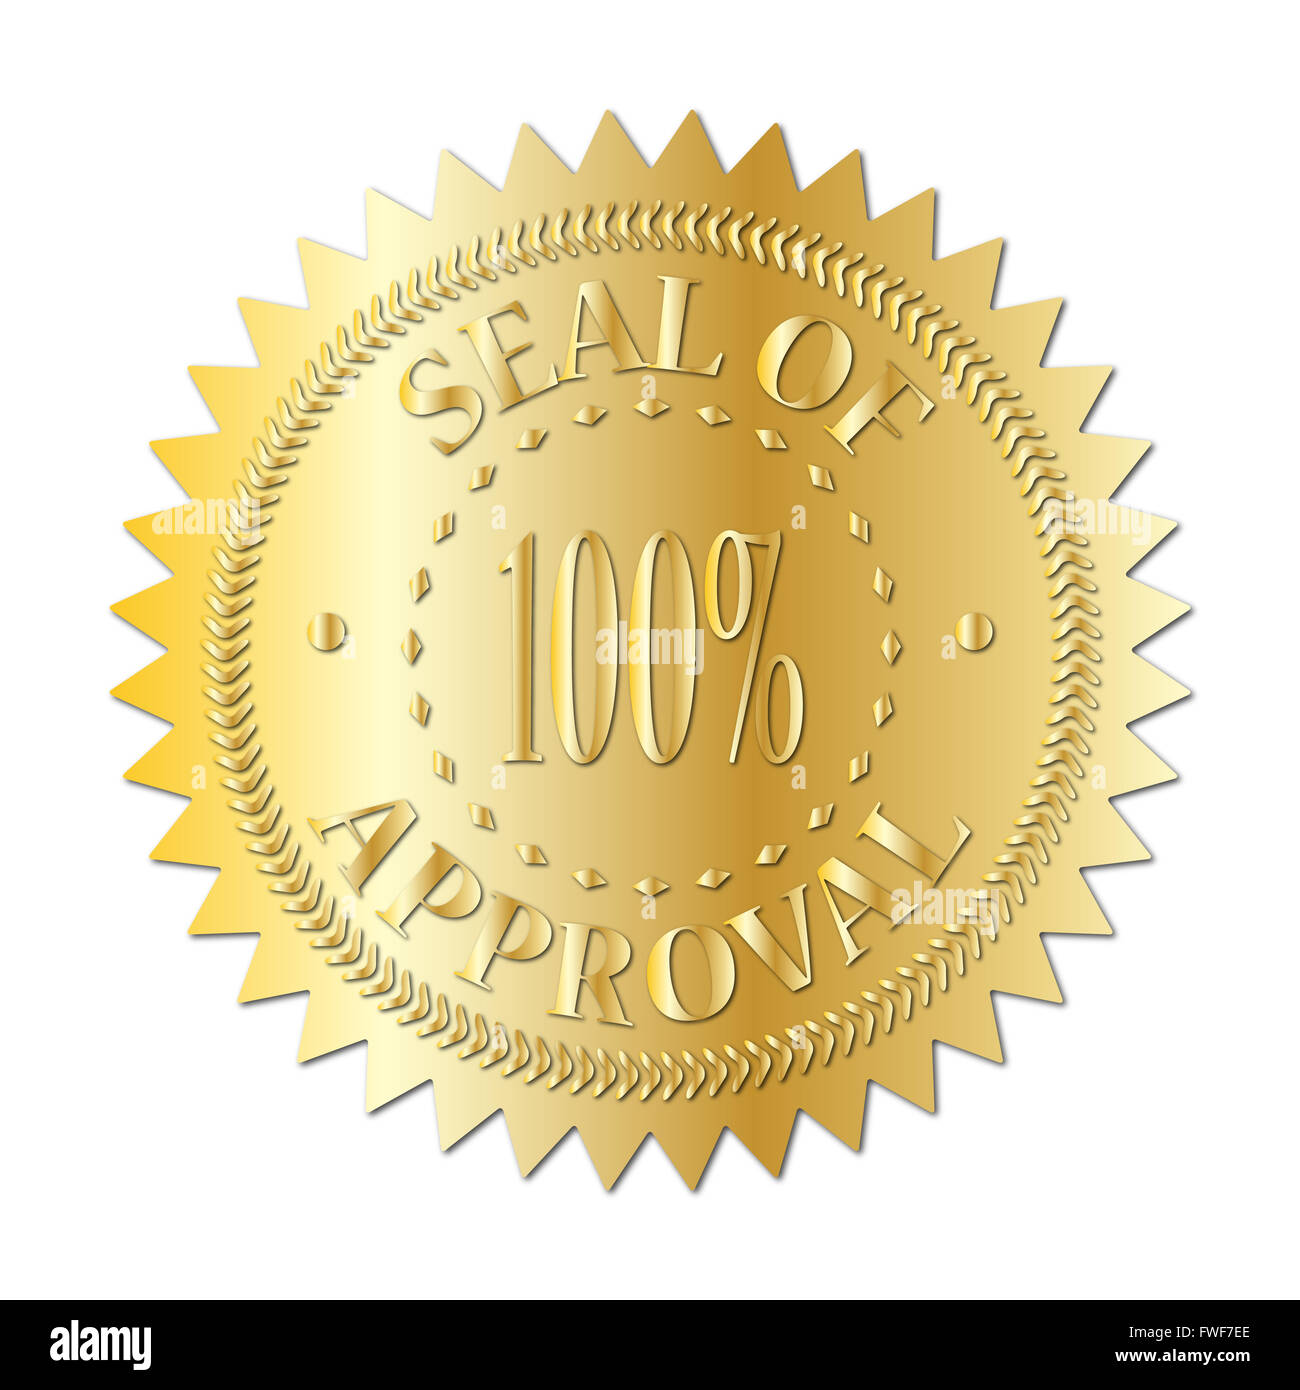 Un sigillo d'oro del riconoscimento distintivo isolato su uno sfondo bianco Foto Stock